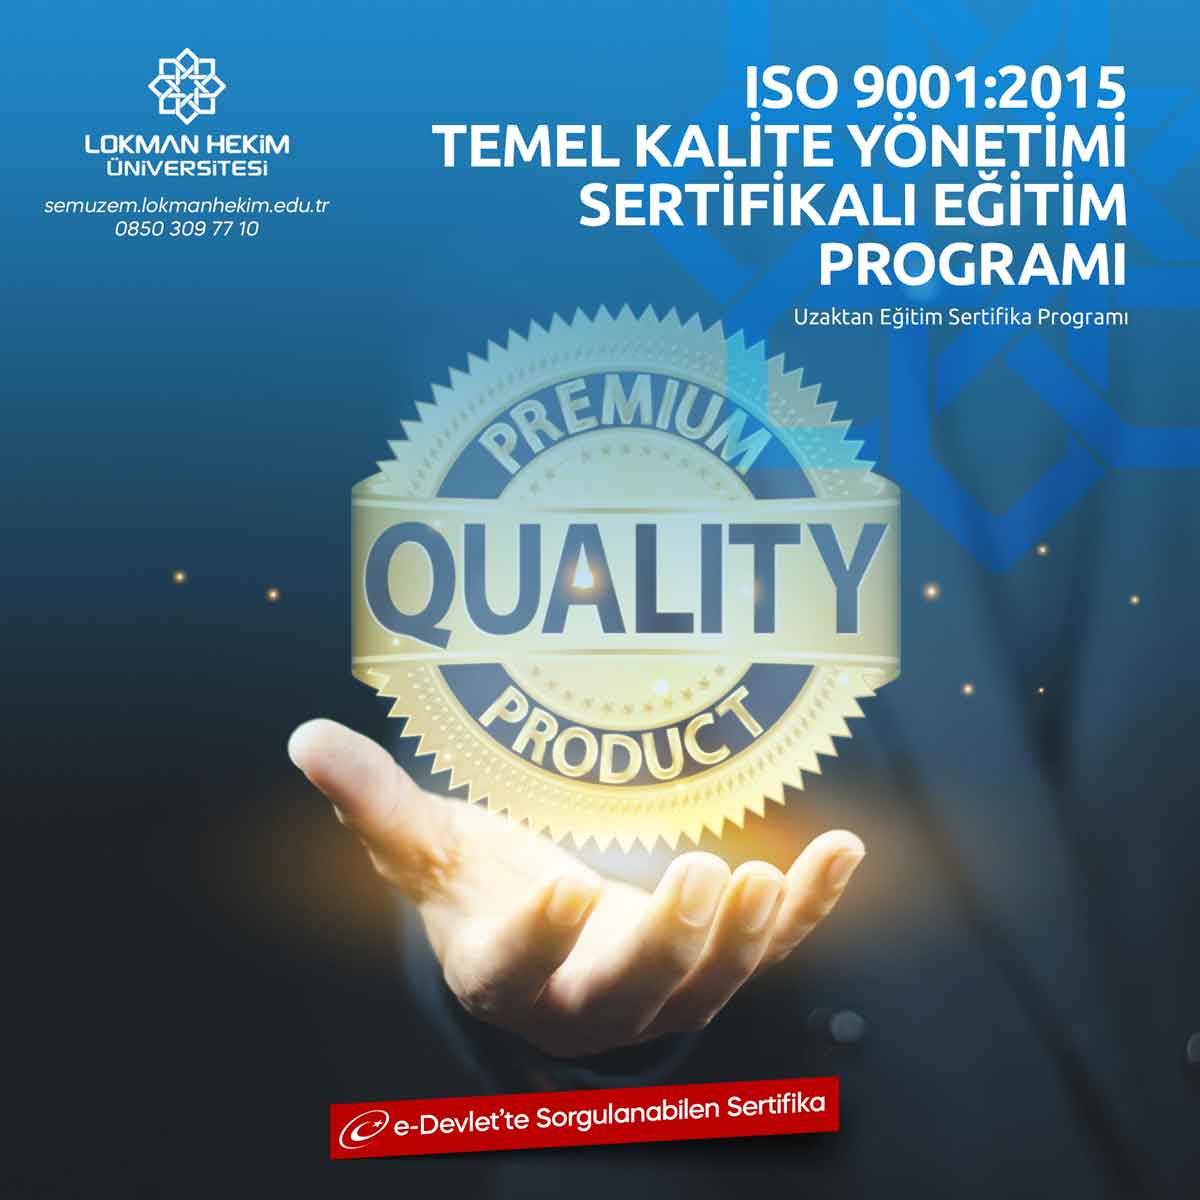 ISO 9001:2015 Temel Kalite Yönetimi Sertifikası Nedir, Nasıl Alınır?